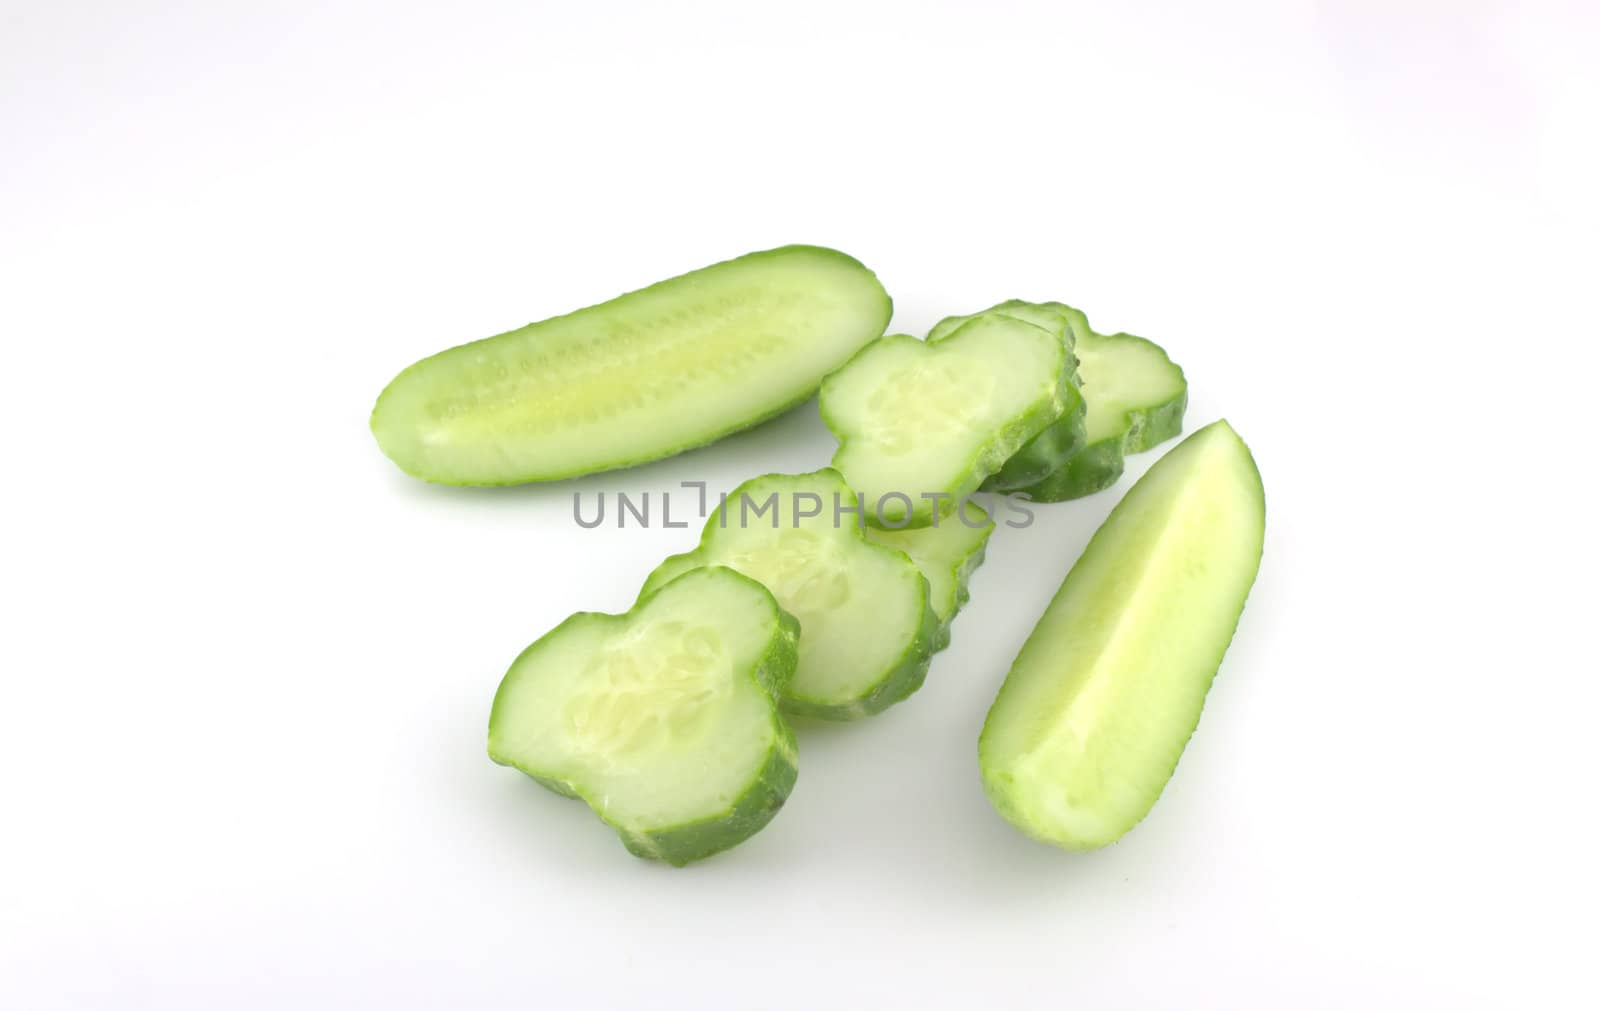 Cutted cucumber by sergpet